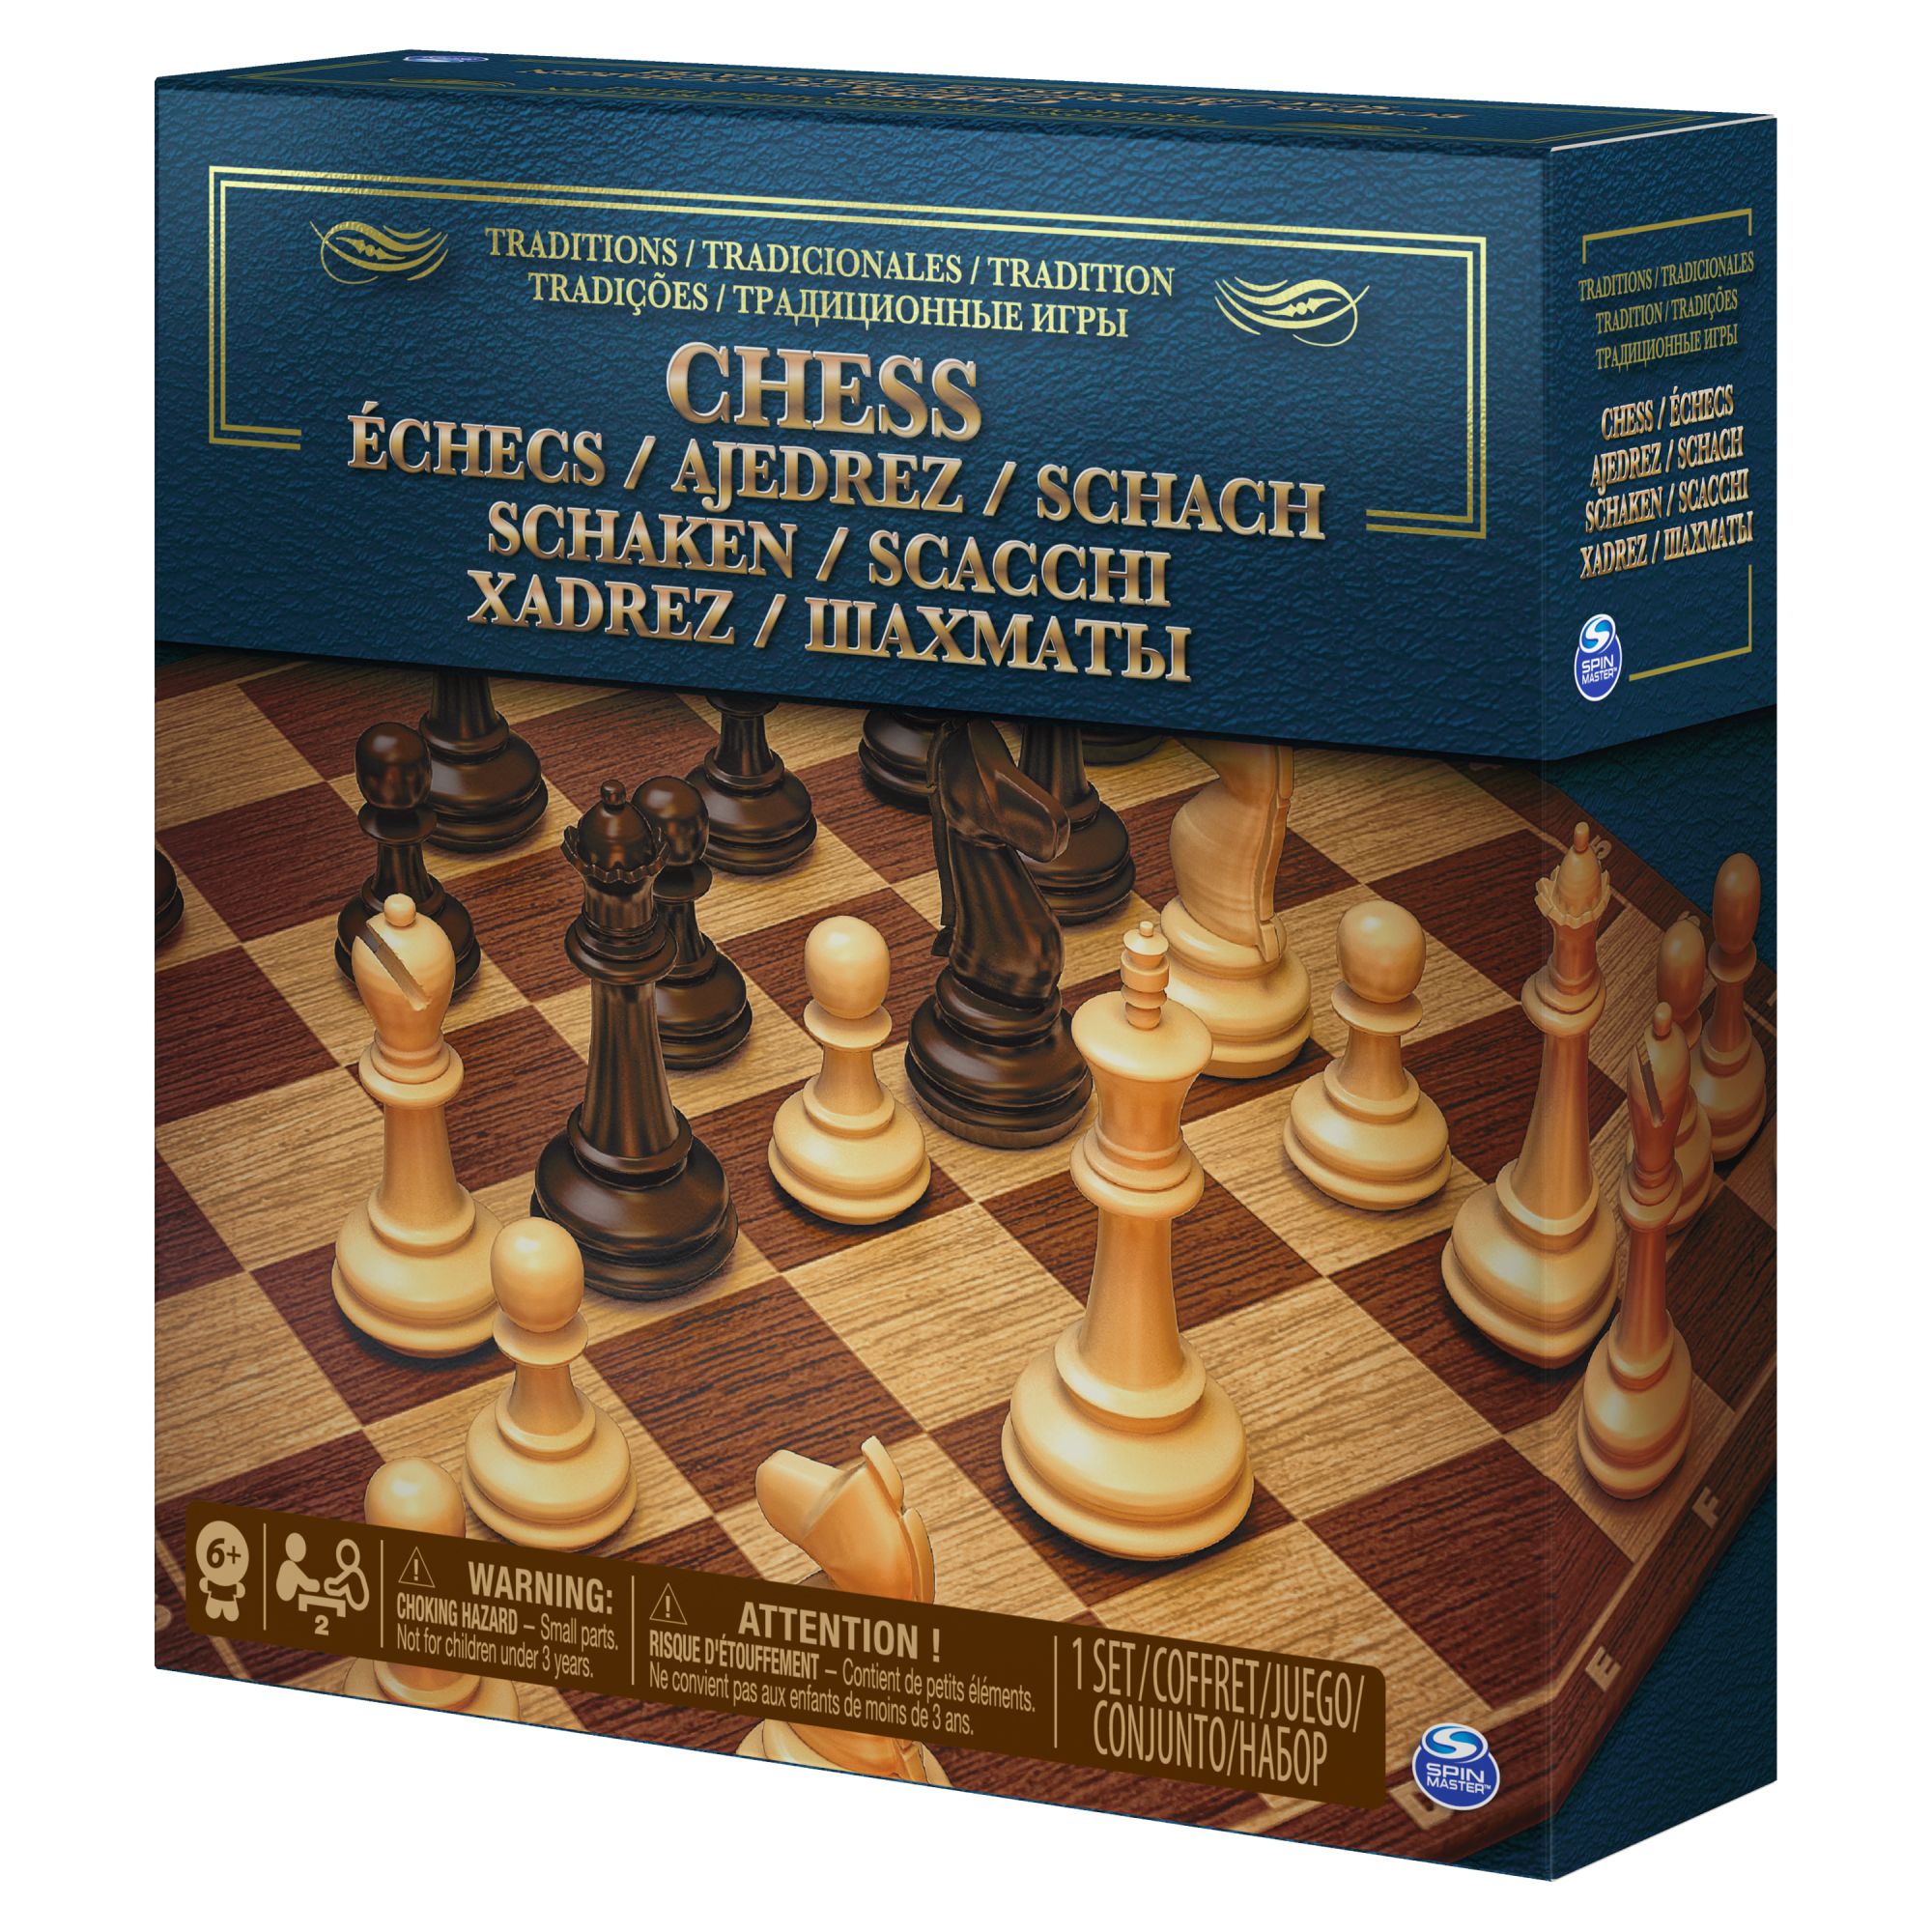 Juegos de ajedrez en venta en Belo Horizonte, Facebook Marketplace